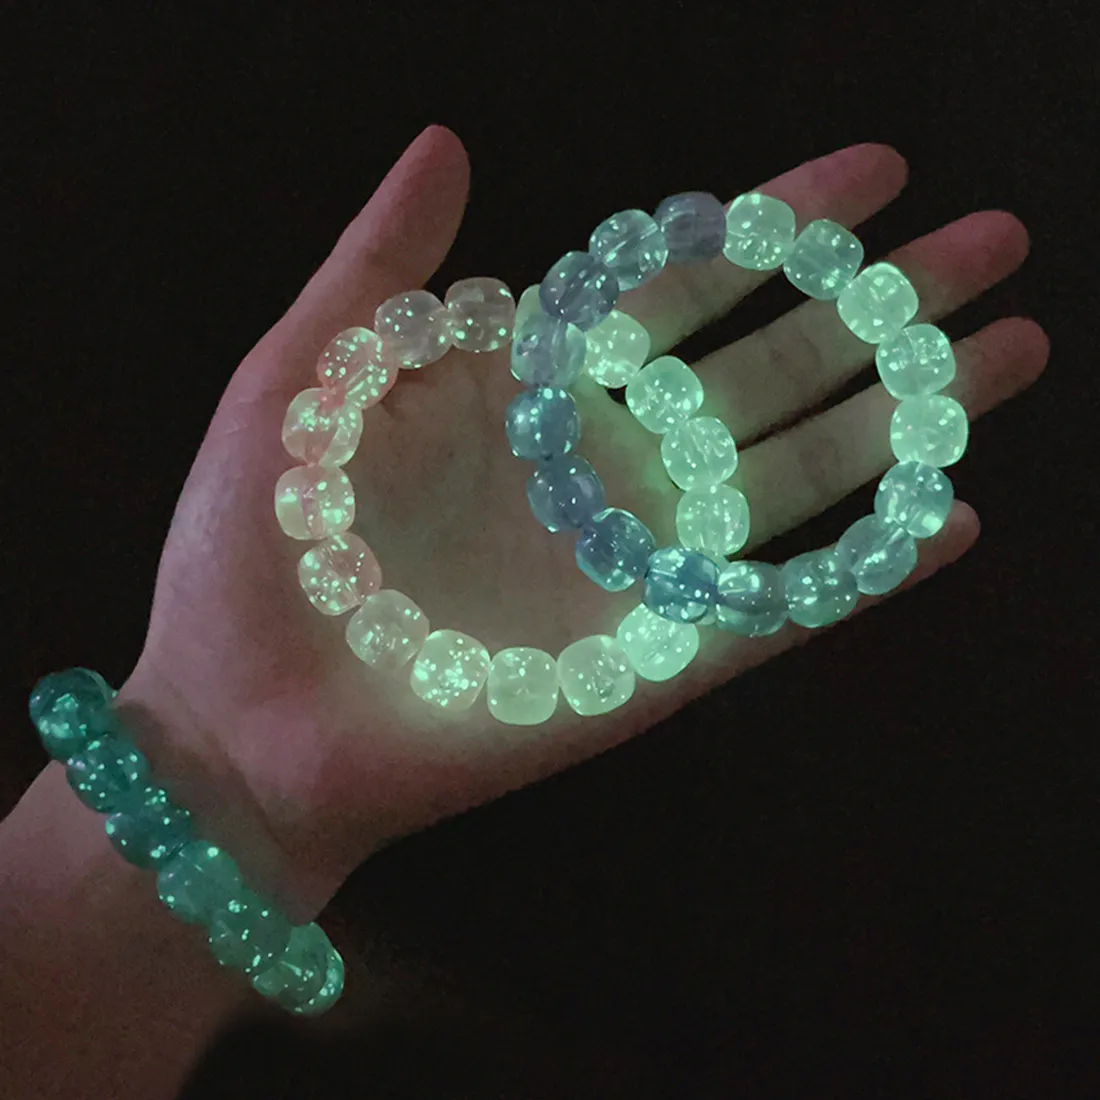 Men fluorescent natural stone bracelet night light glowing beads bangle fashion jewelry thumb200